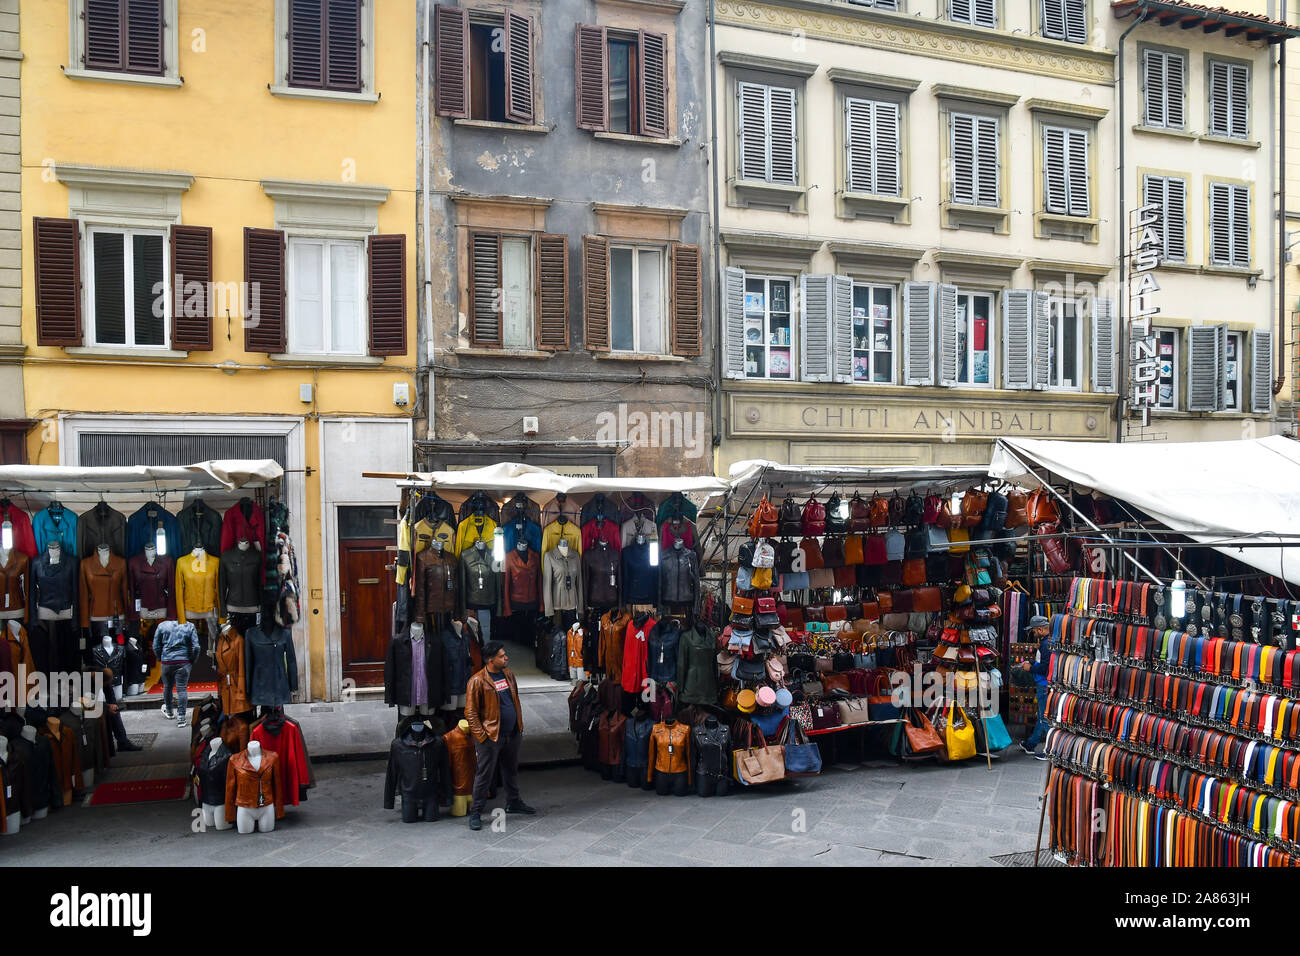 Portrait du marché de rue avec des stands d'articles en cuir dans la zone du marché central de San Lorenzo, dans le centre-ville de Florence, Toscane, Italie Banque D'Images